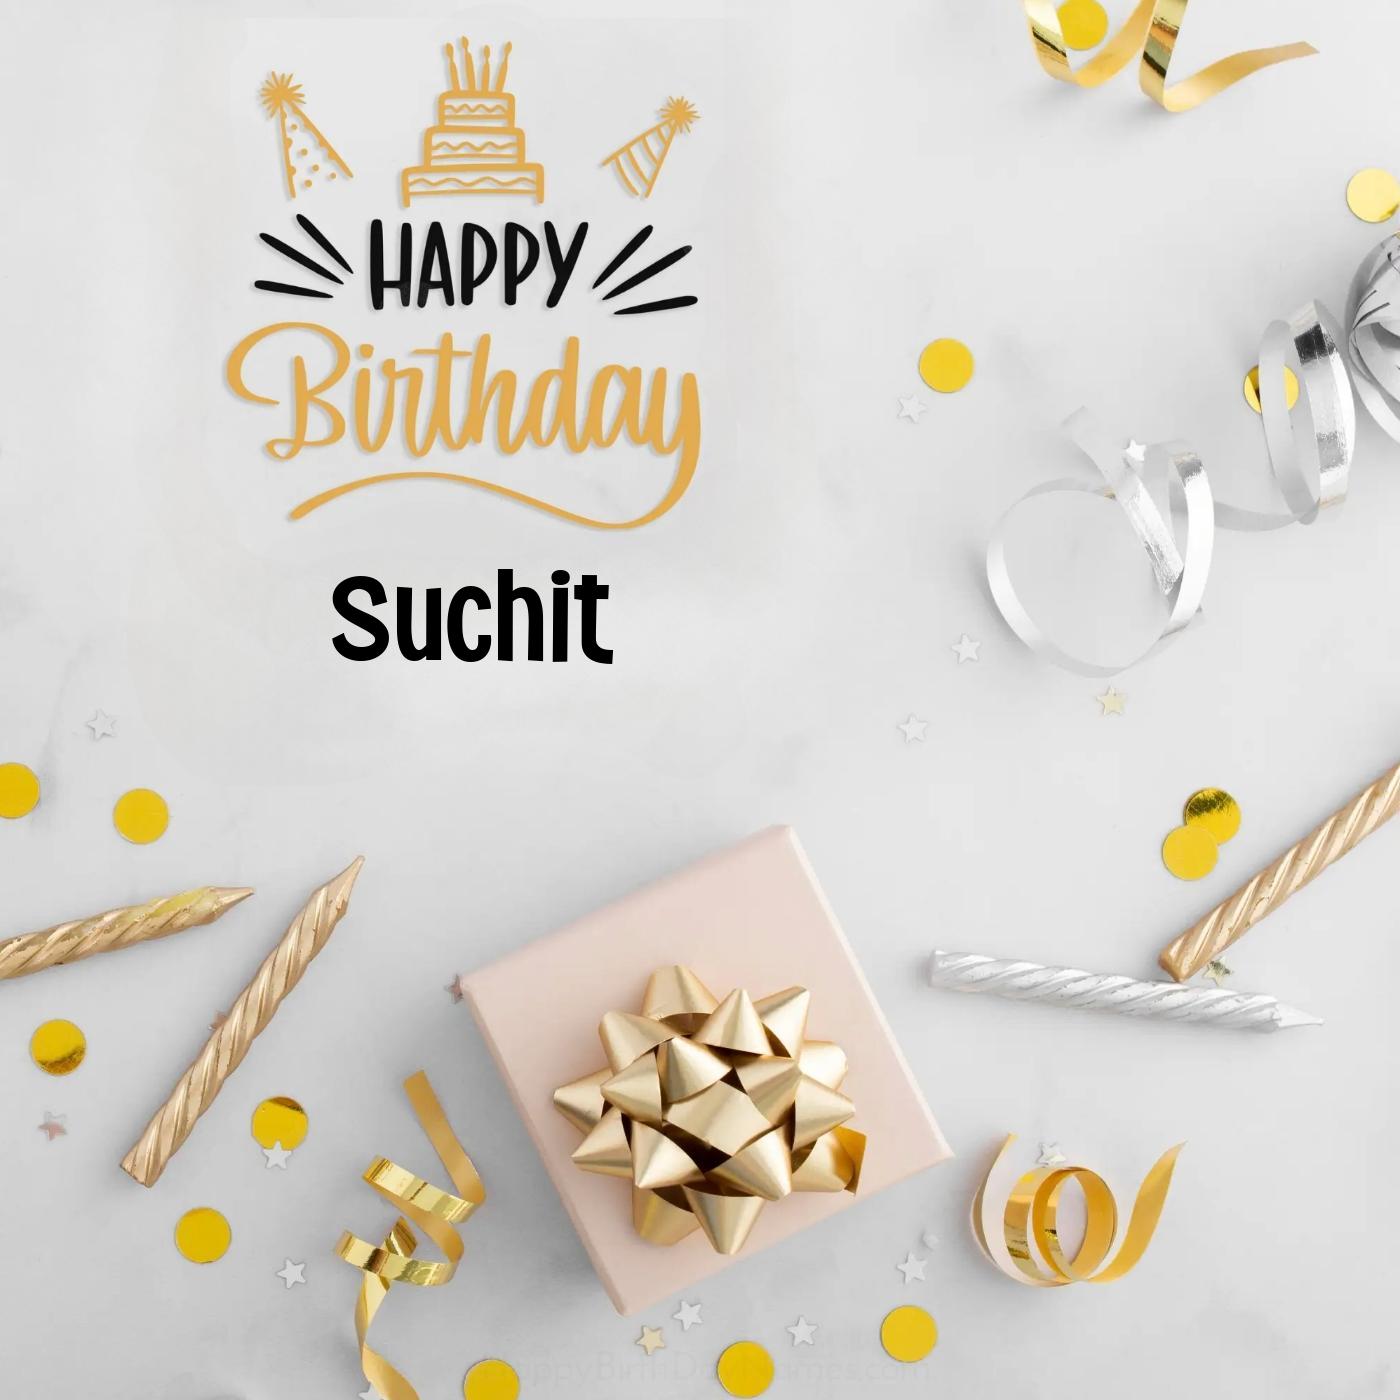 Happy Birthday Suchit Golden Assortment Card